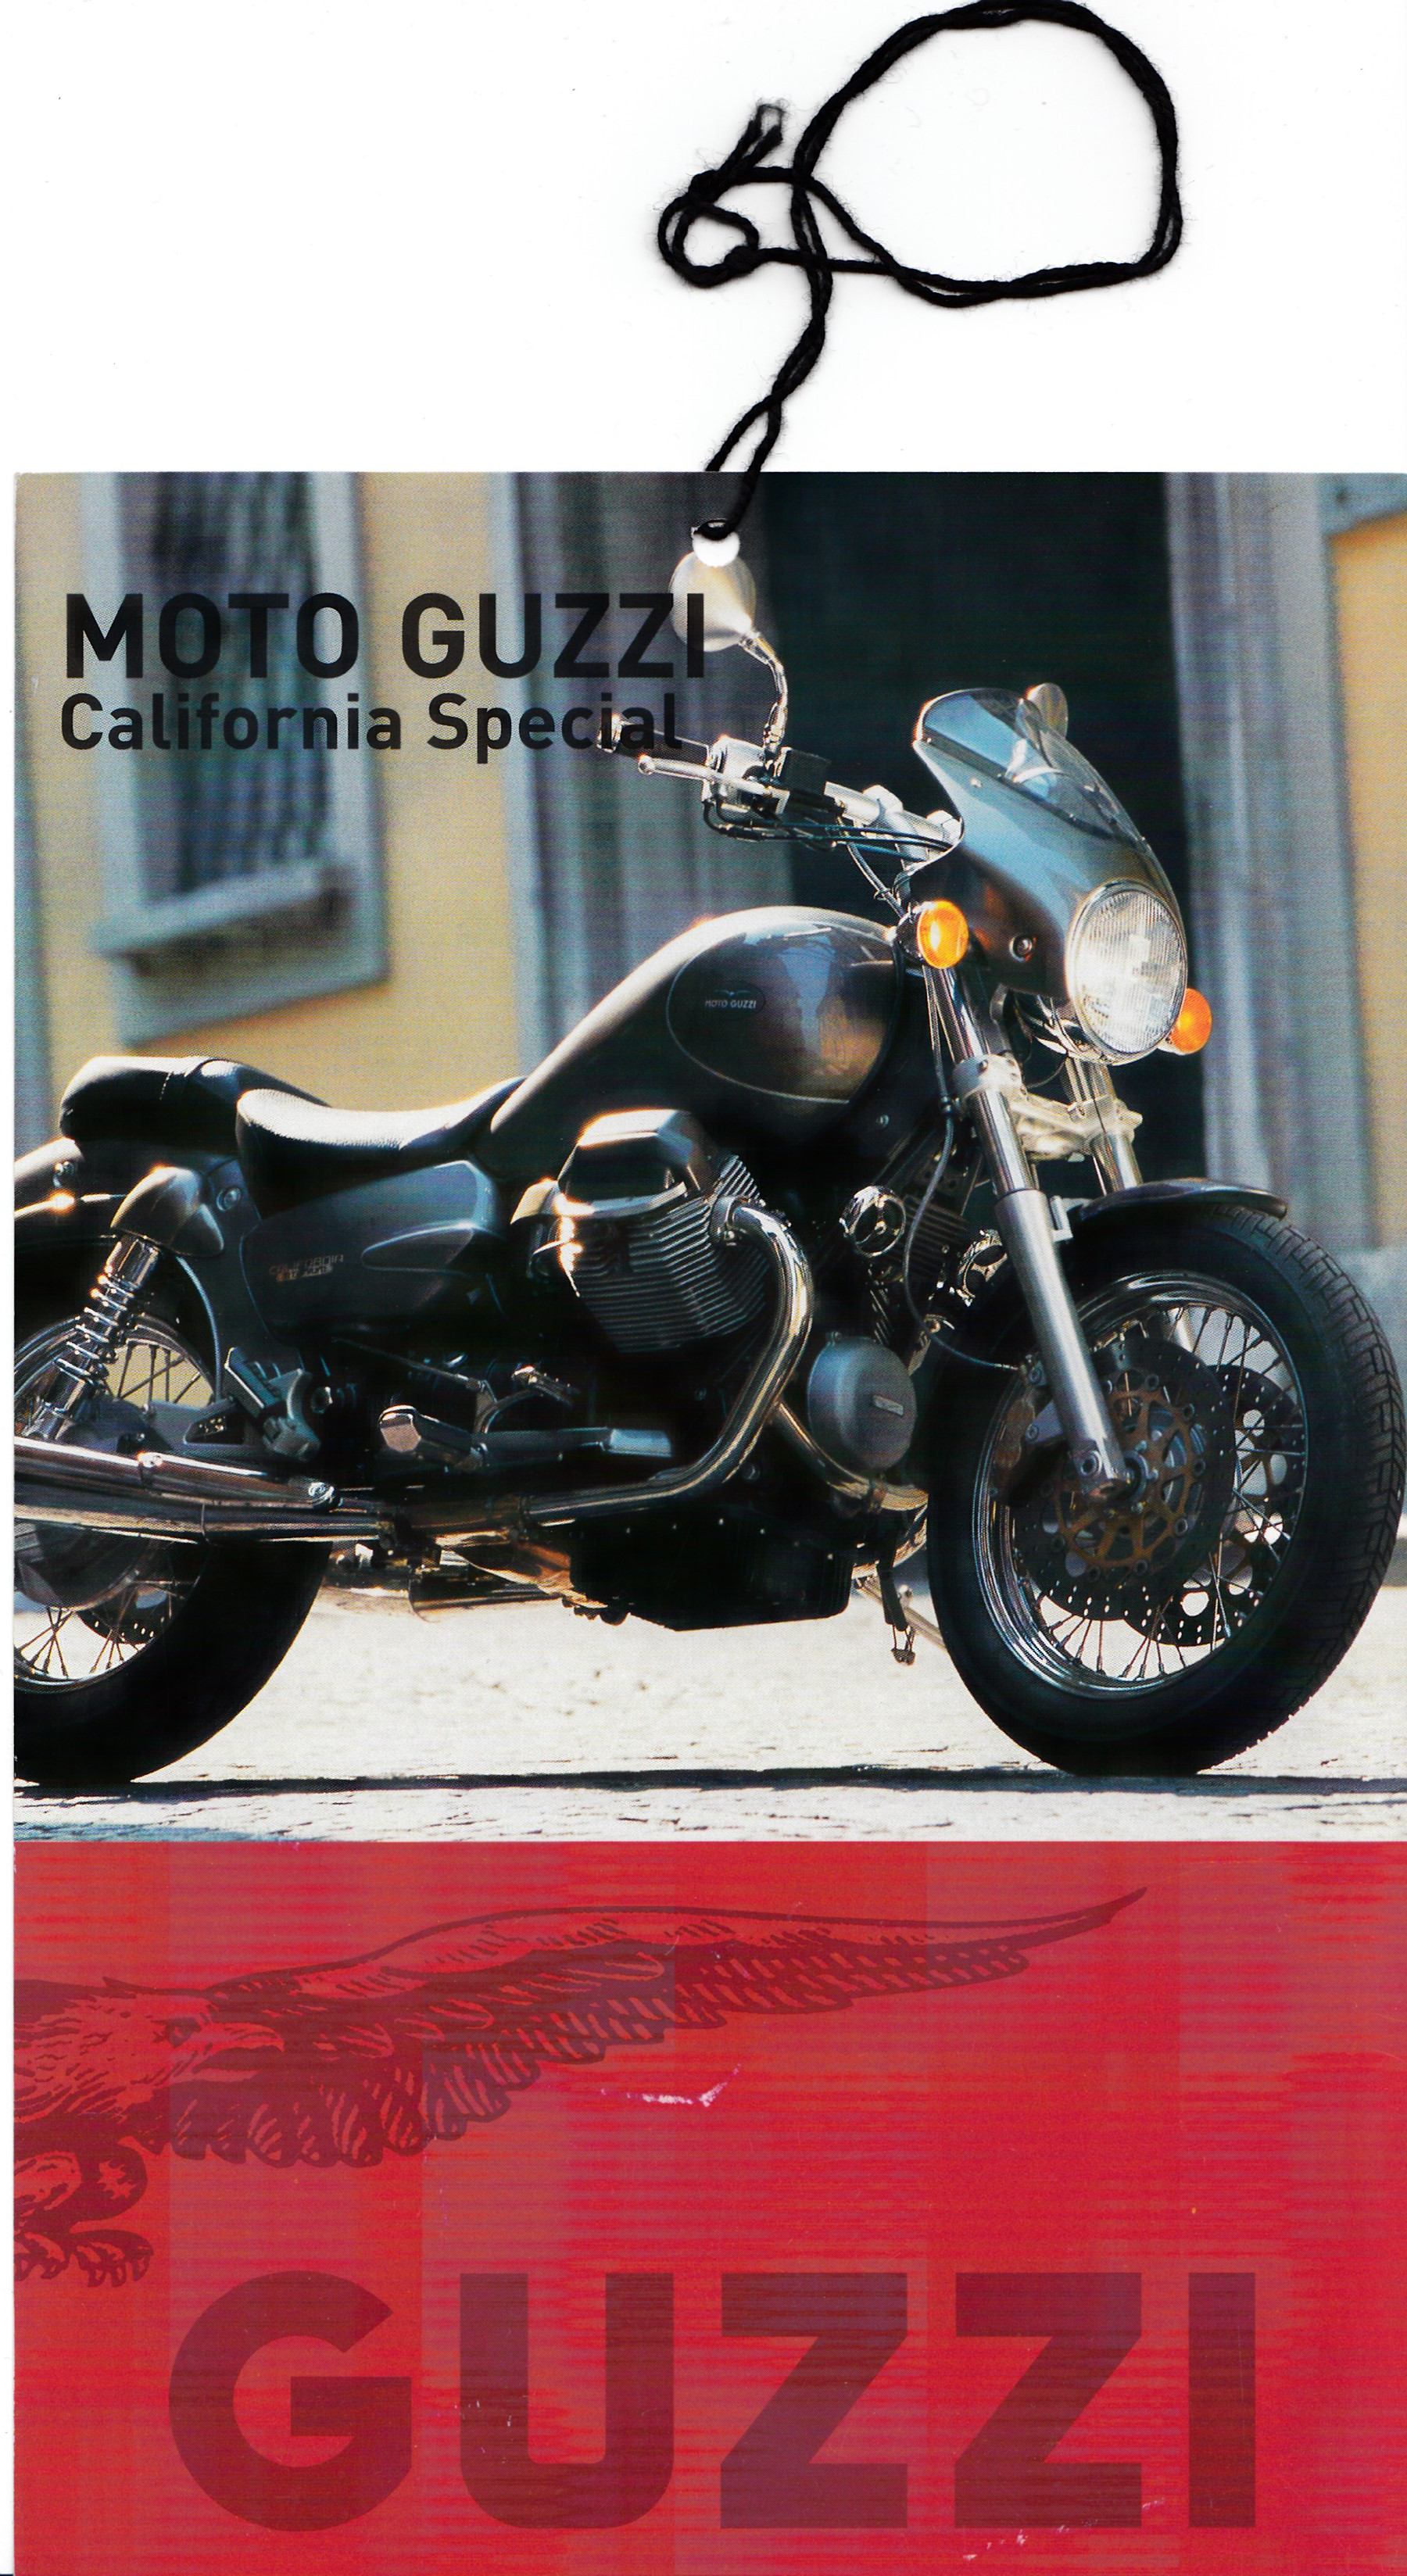 Tag - Moto Guzzi California Special